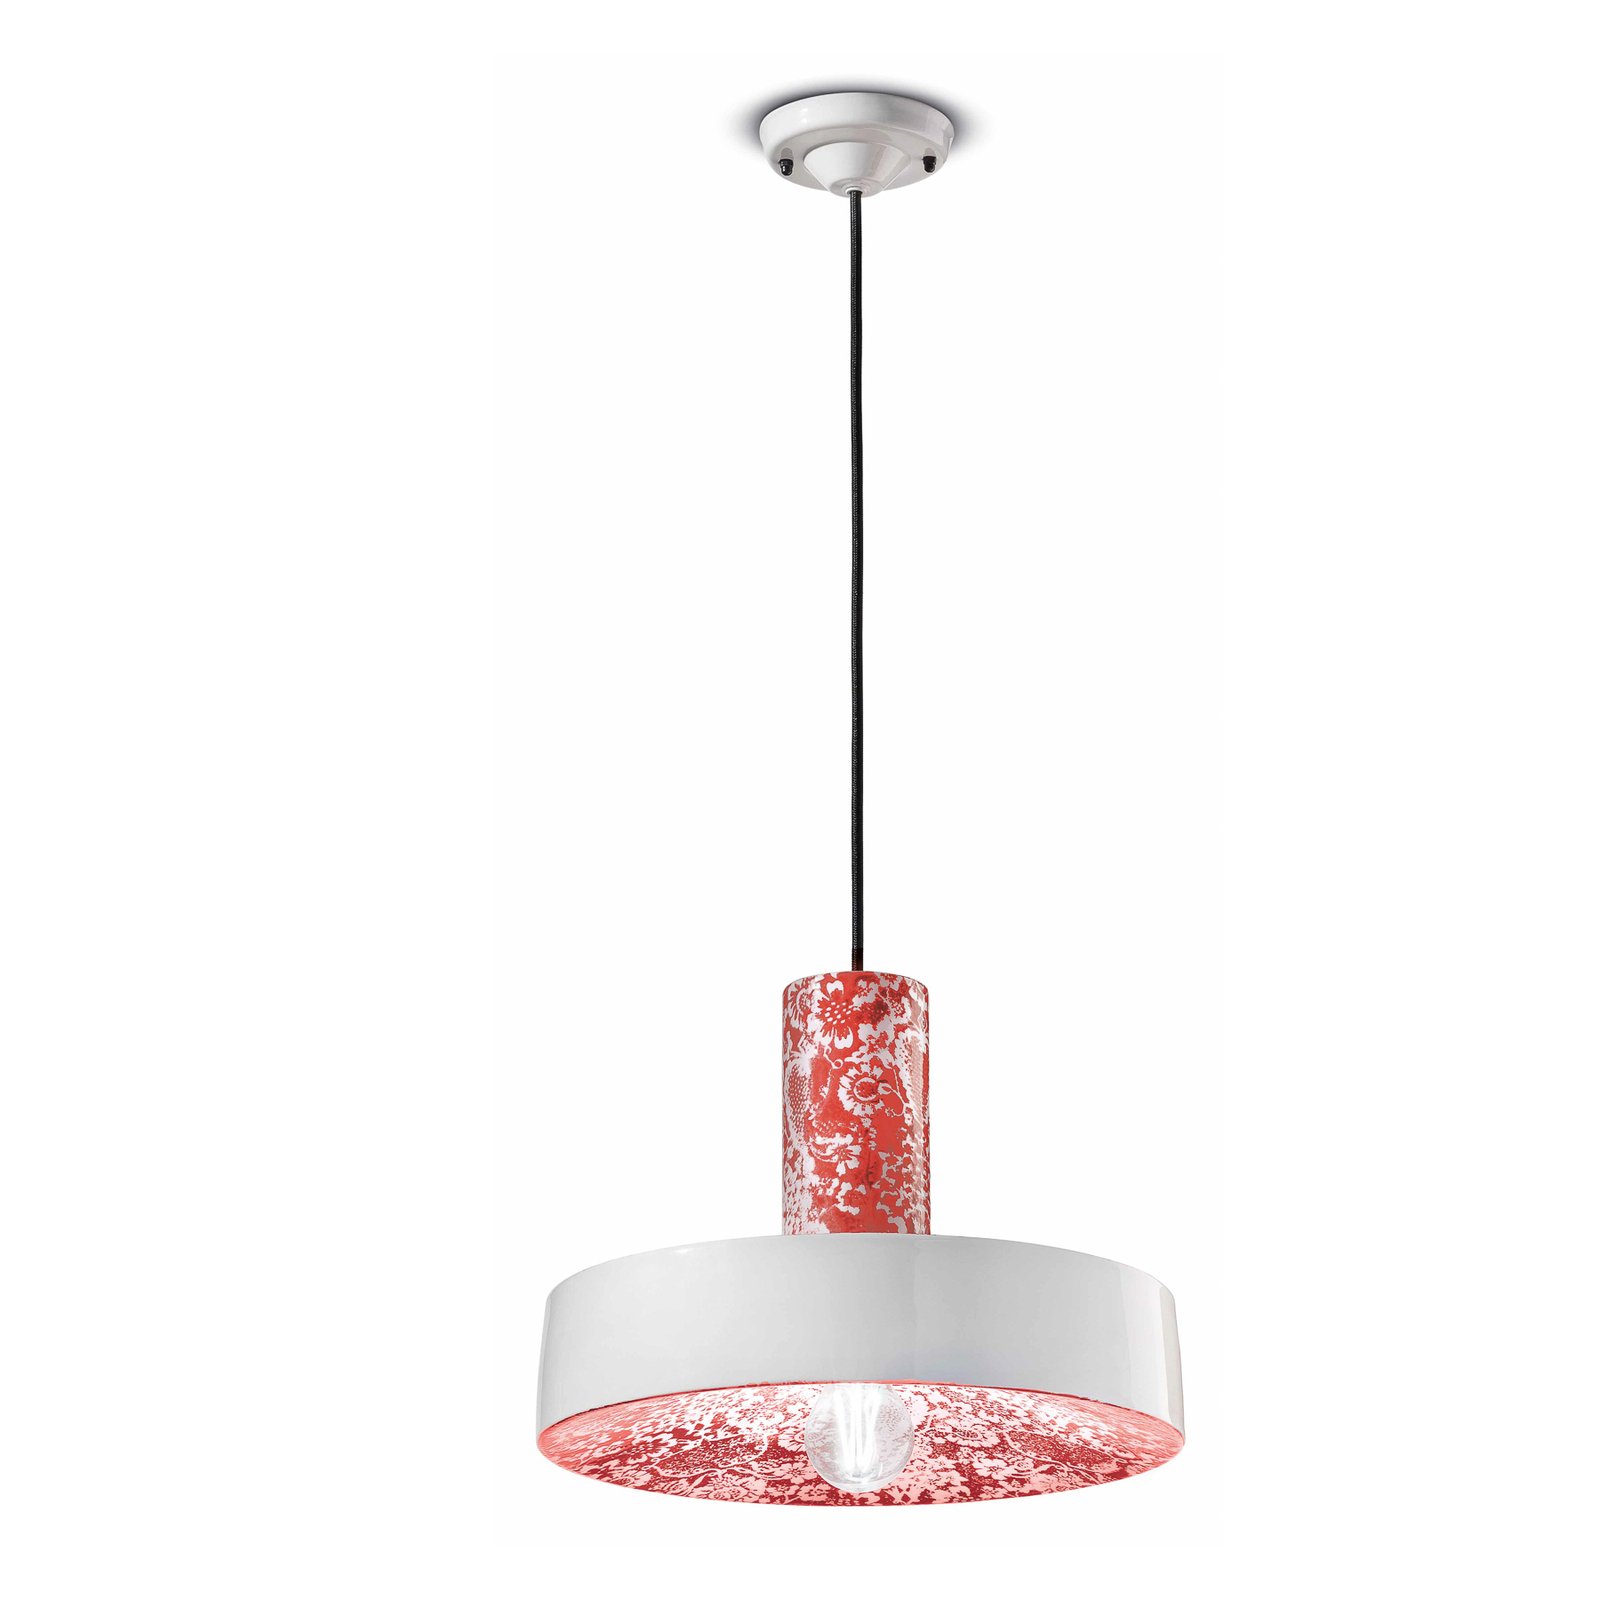 Hanglamp PI met bloemenmotief, Ø 35 cm, rood/wit